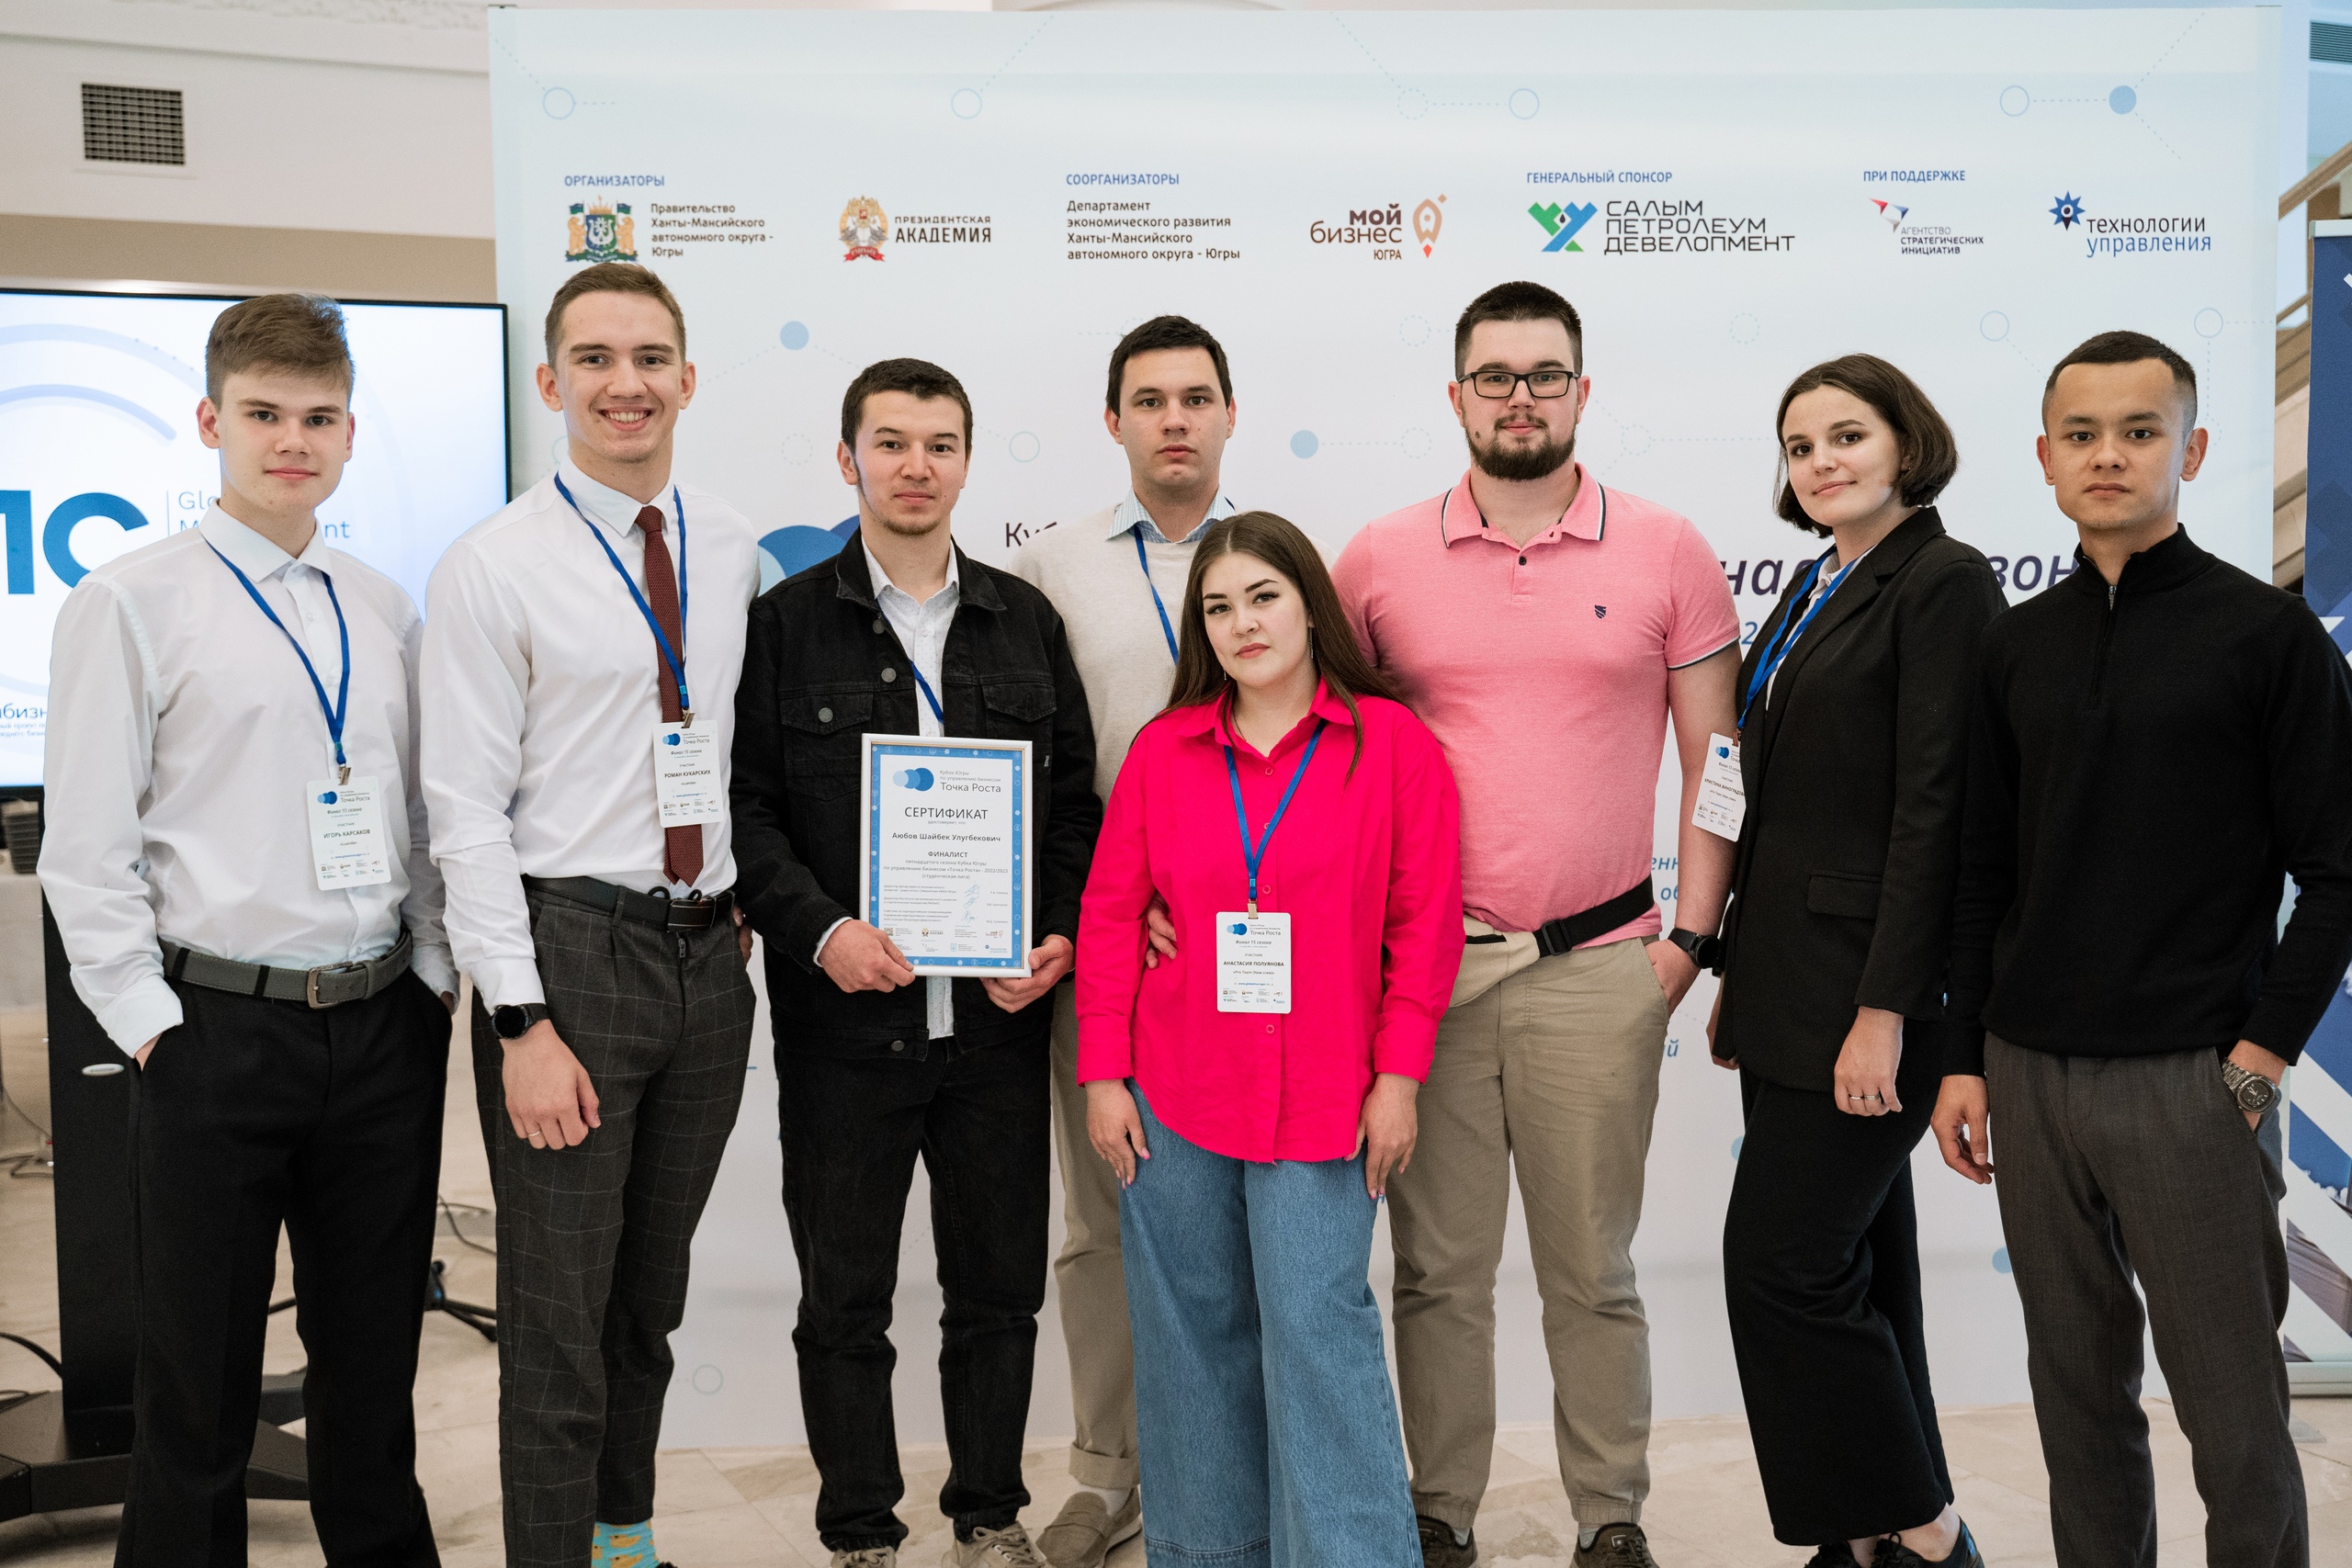 Студенты ЮГУ стали победителями регионального чемпионата «Кубка Югры по управлению бизнесом «Точка Роста»